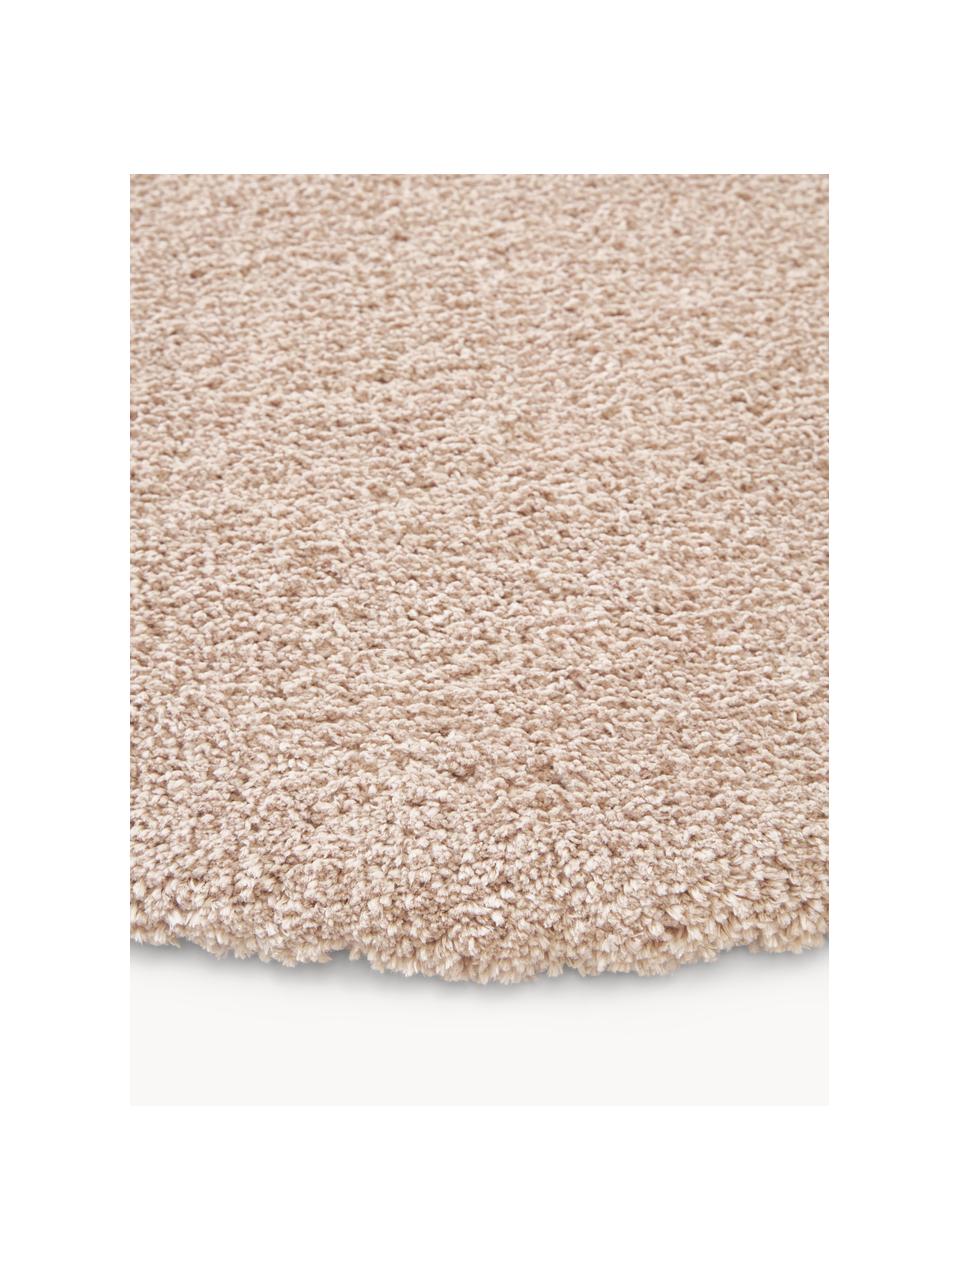 Načechraný kulatý koberec s vysokým vlasem Leighton, Béžová, Ø 150 cm (velikost M)